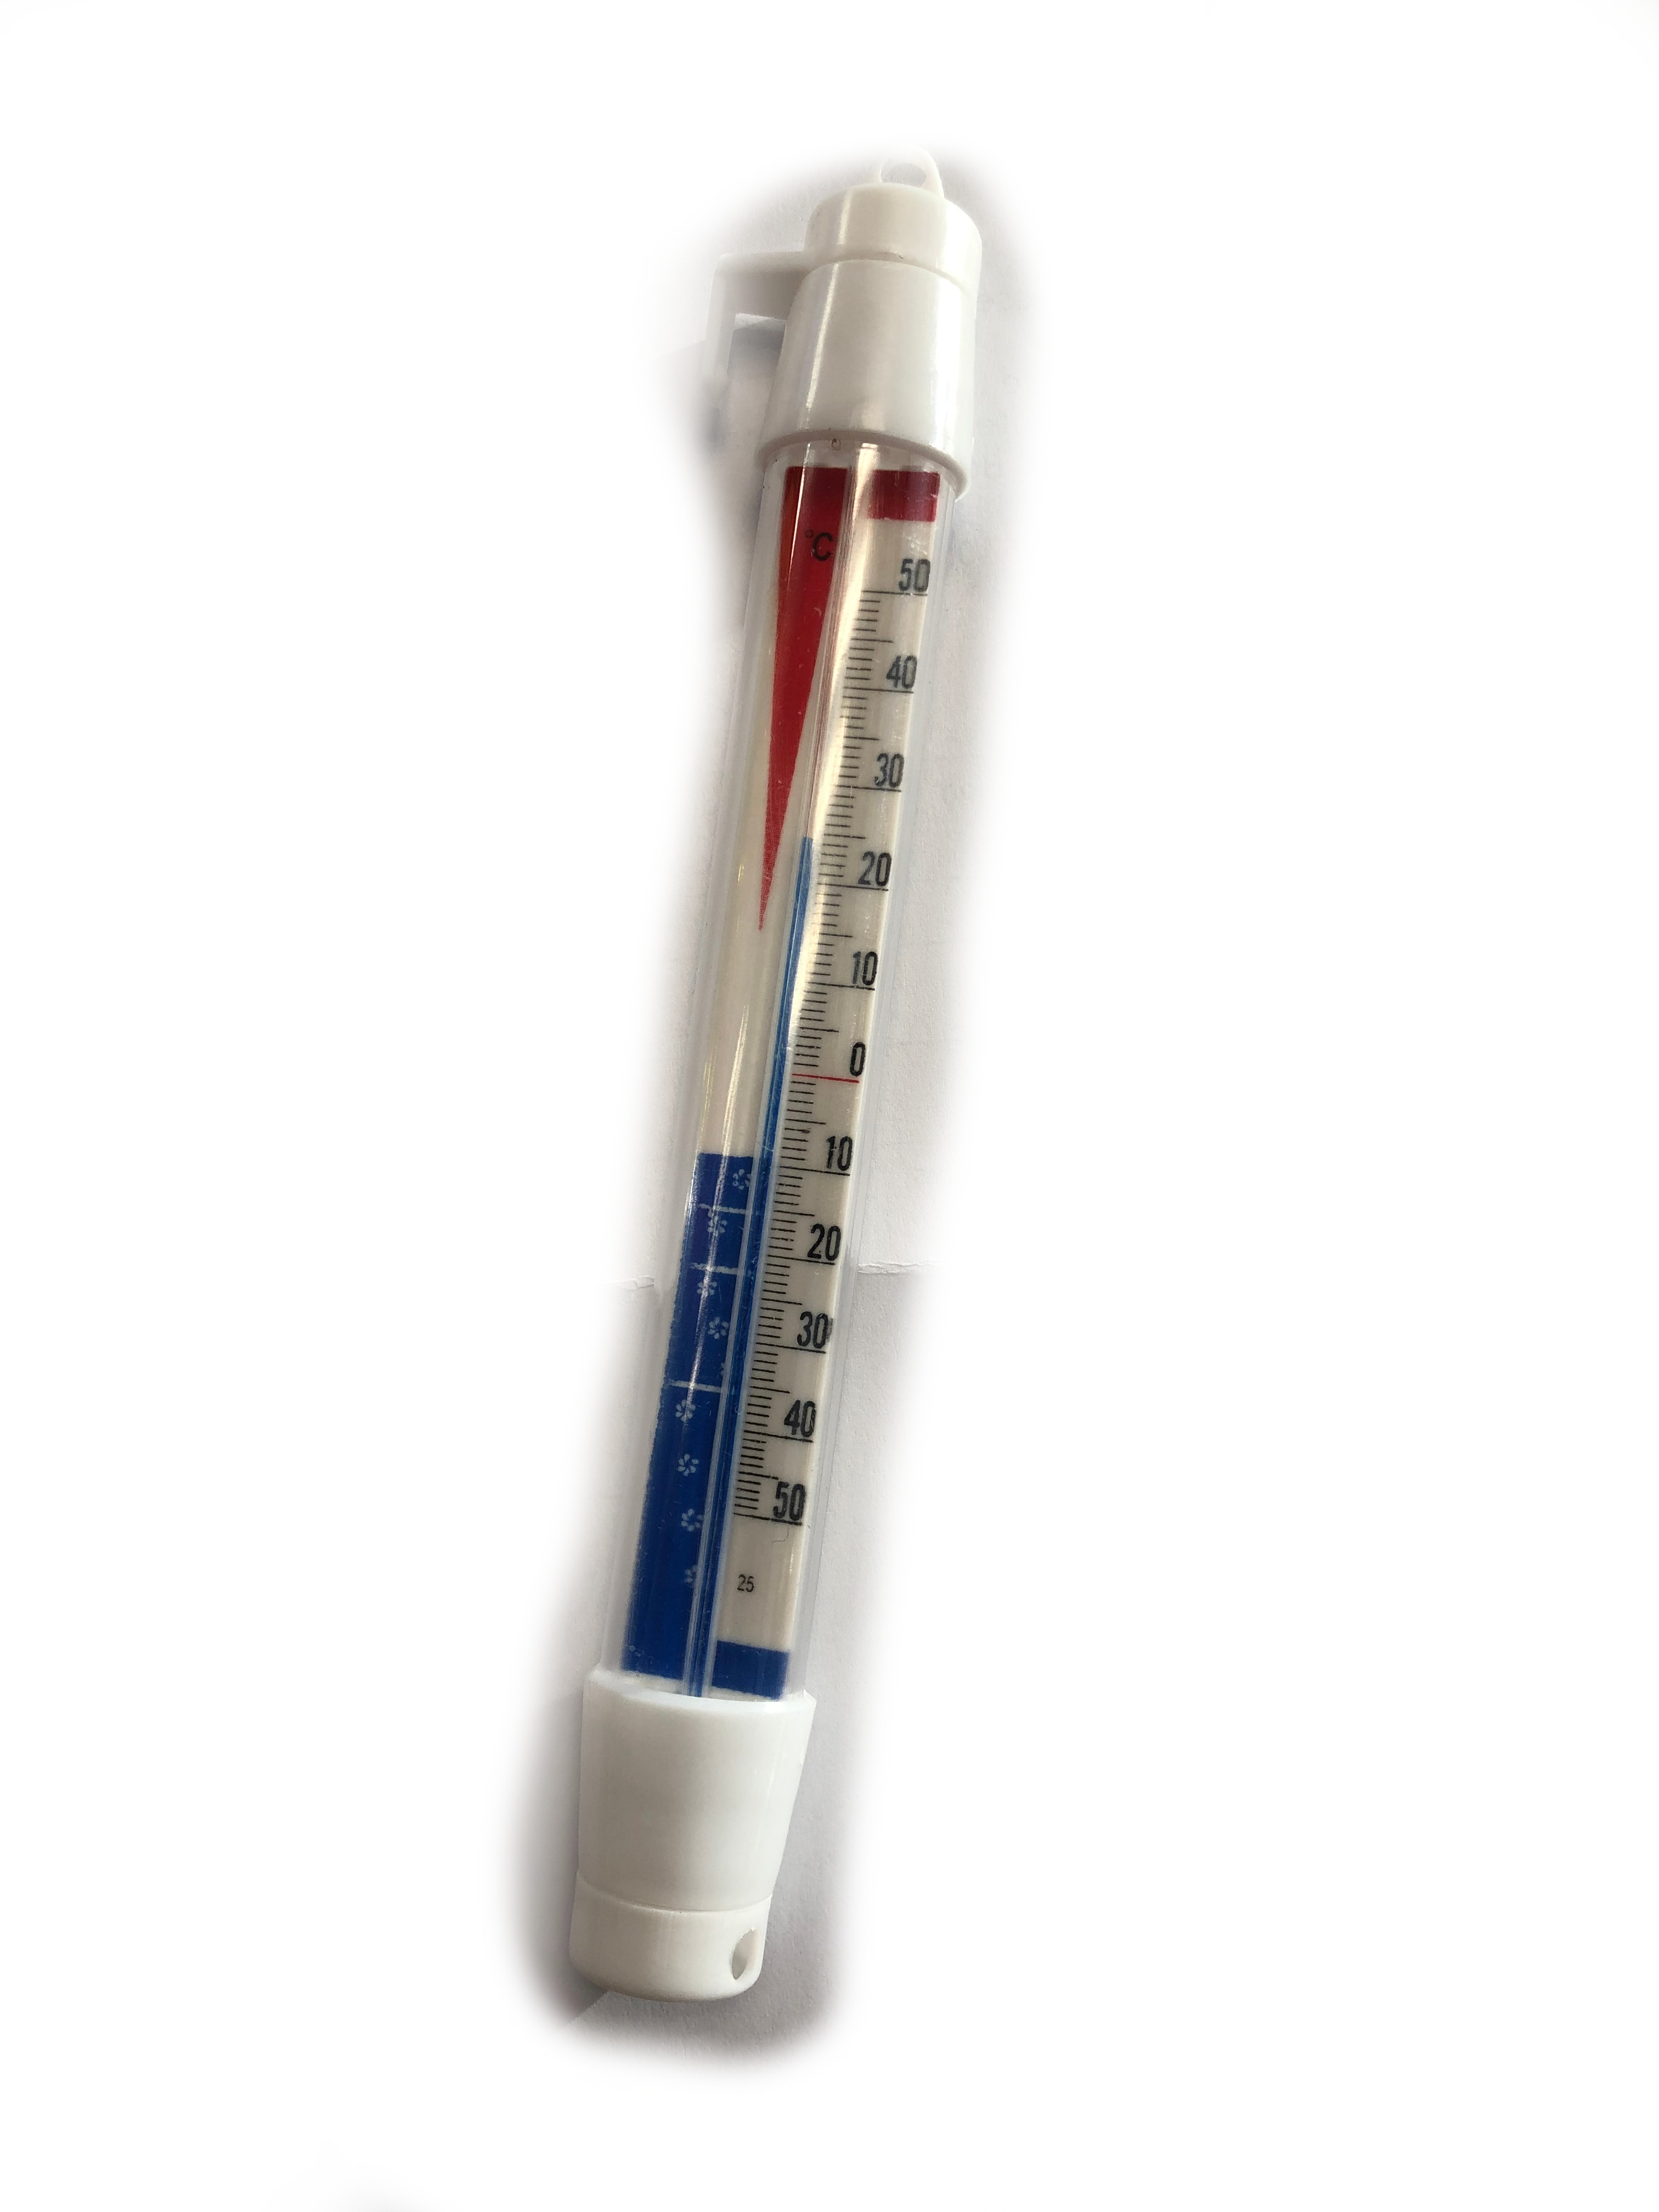 Thermomètre pour Frigo, réfrigérateur, Thermomètre tout plastique